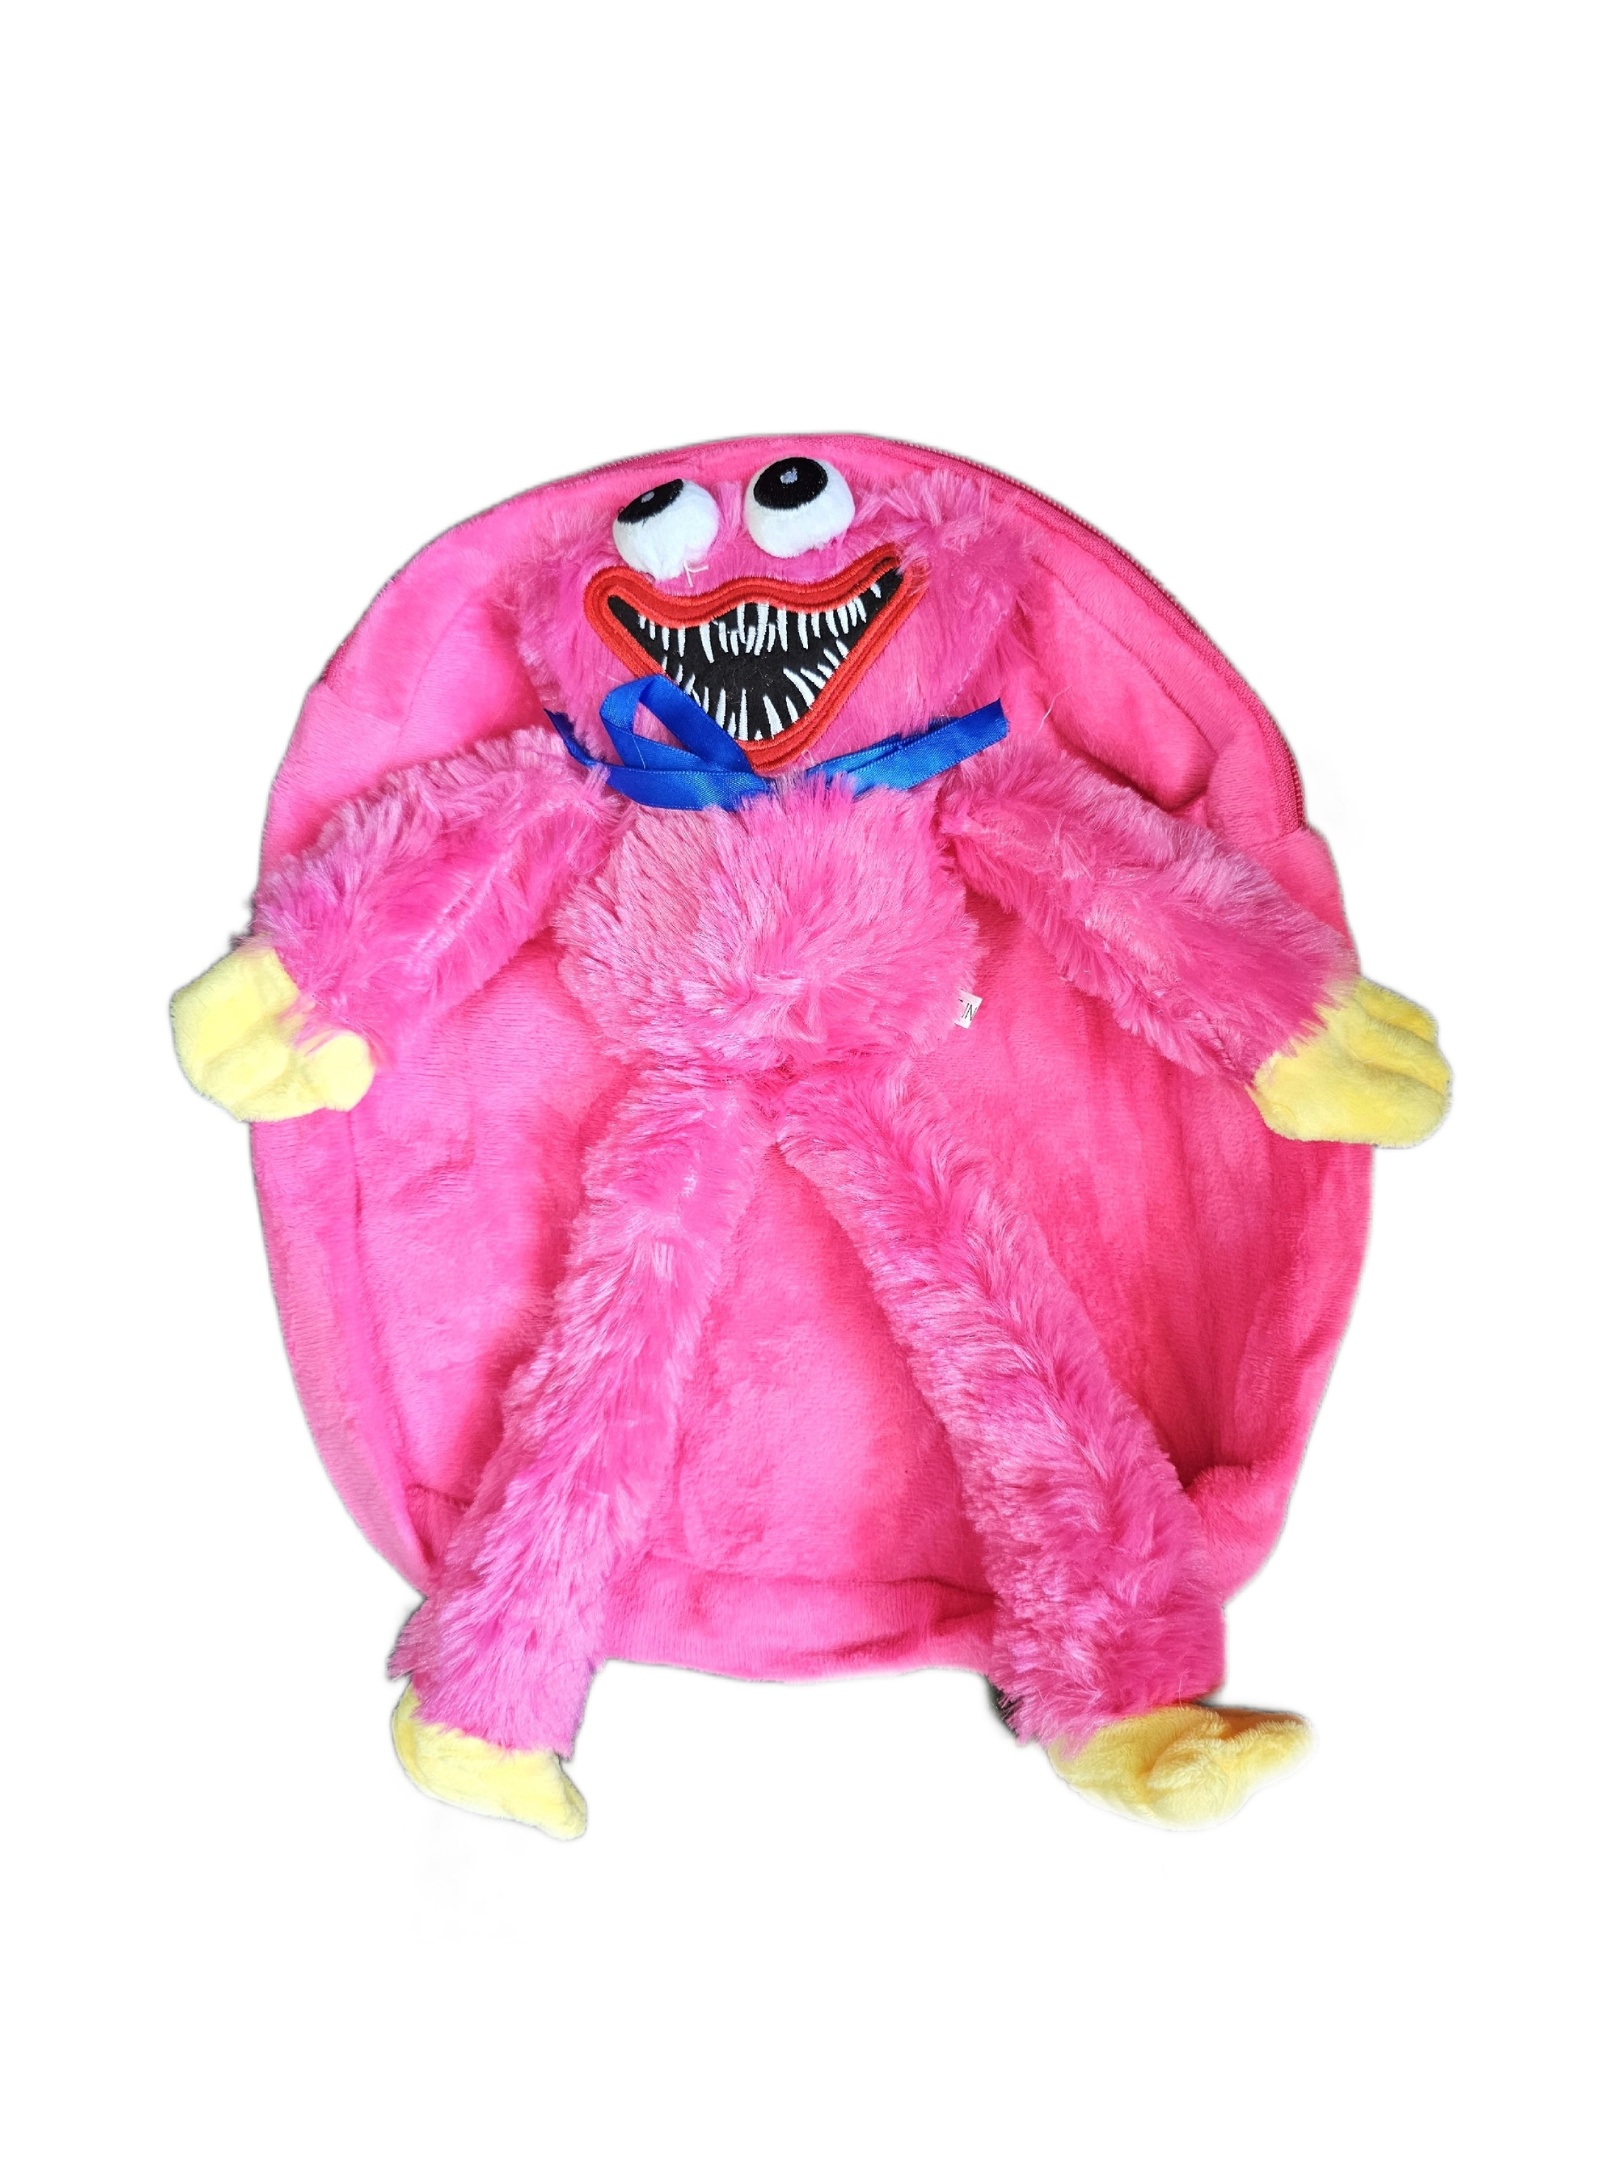 Рюкзак детский плюшевый с игрушкой Кисси Мисси Хаги Ваги, цвет розовый рюкзак школьный из текстиля на молнии 5 карманов розовый